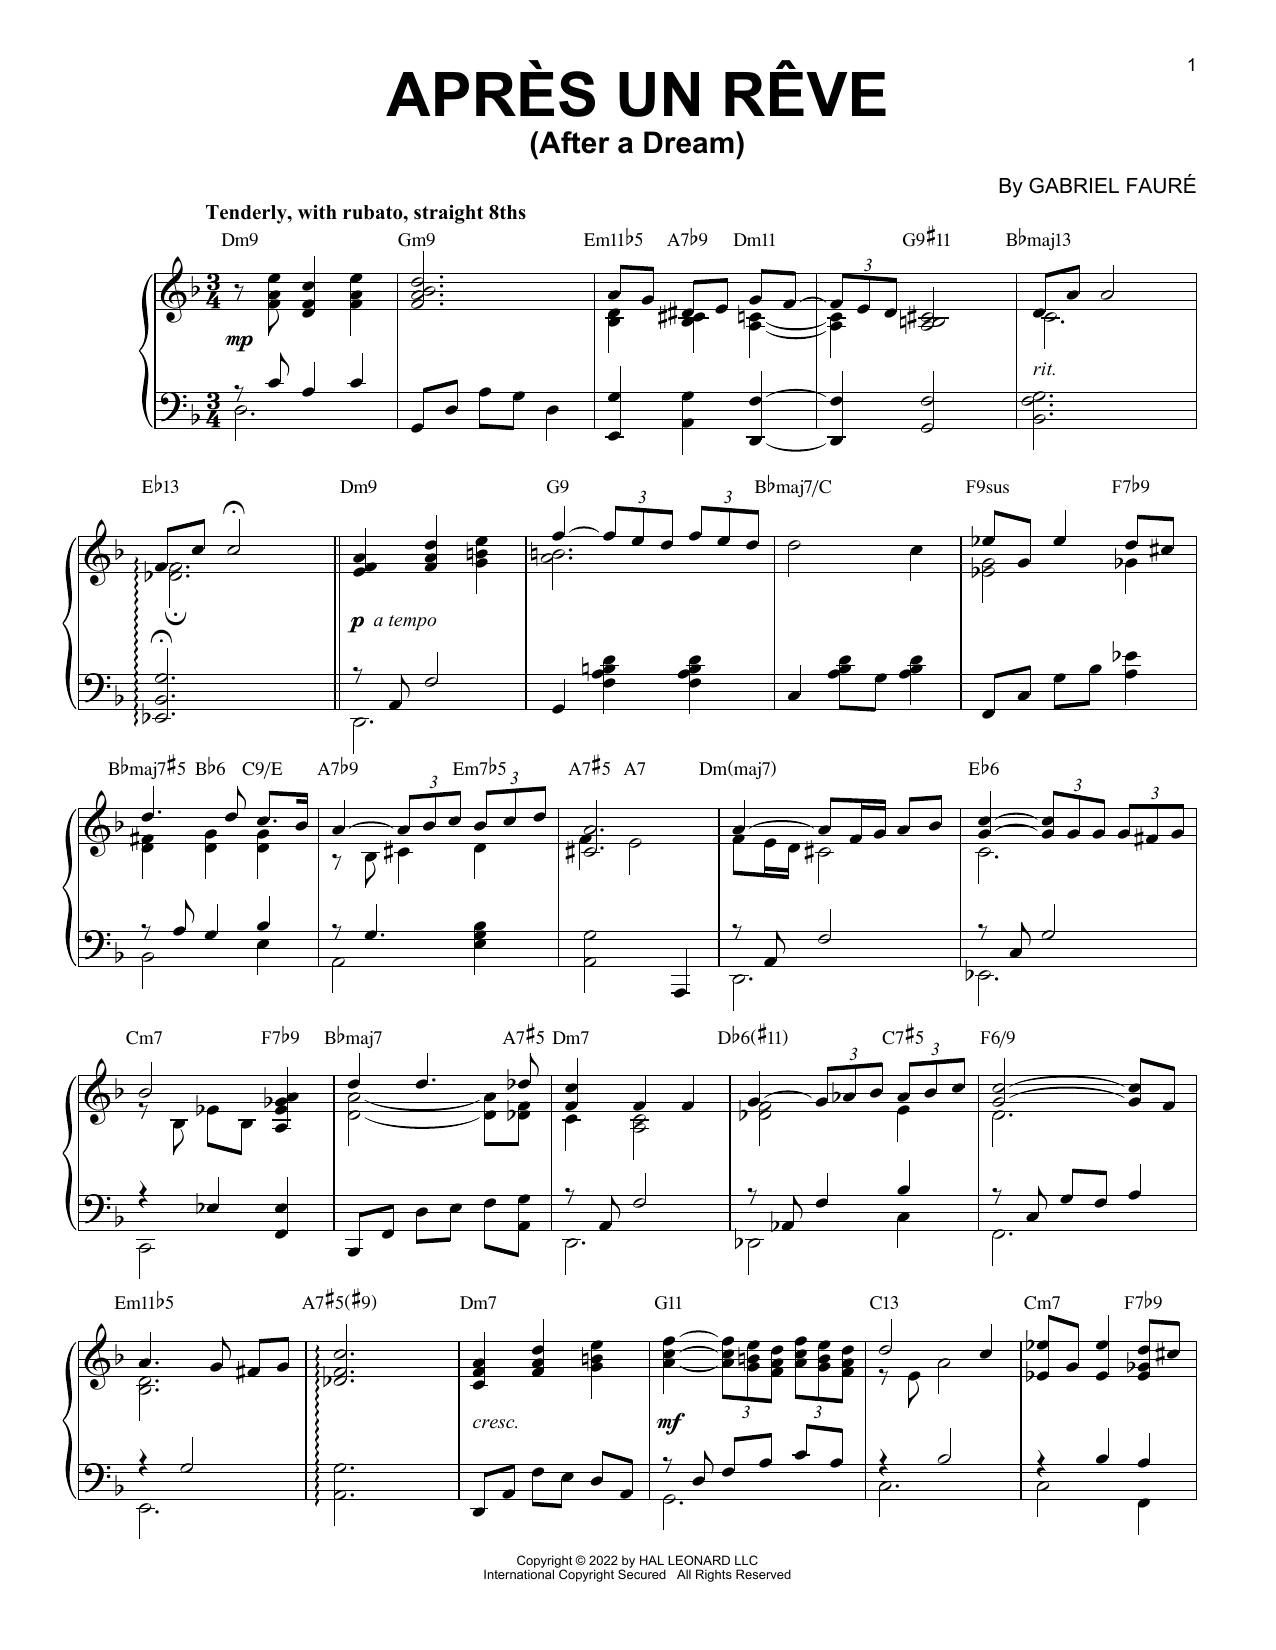 Download Gabriel Faure Apres Un Reve [Jazz version] (arr. Bren Sheet Music